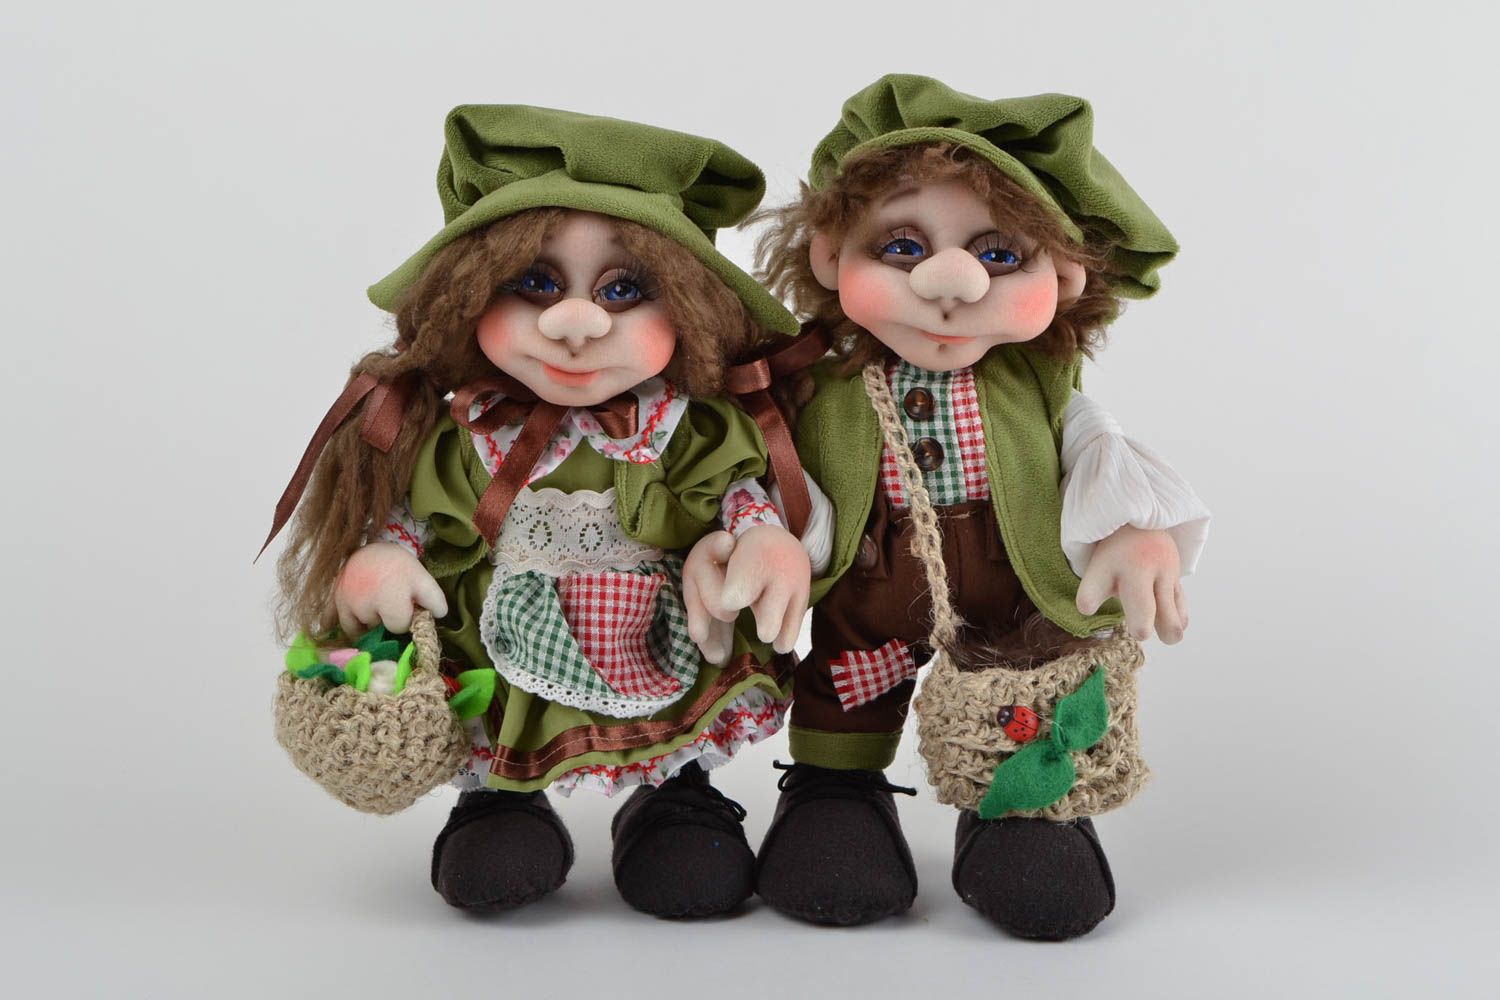 Handmade toys designer dolls set of 2 doll toys gifts for children home decor photo 3